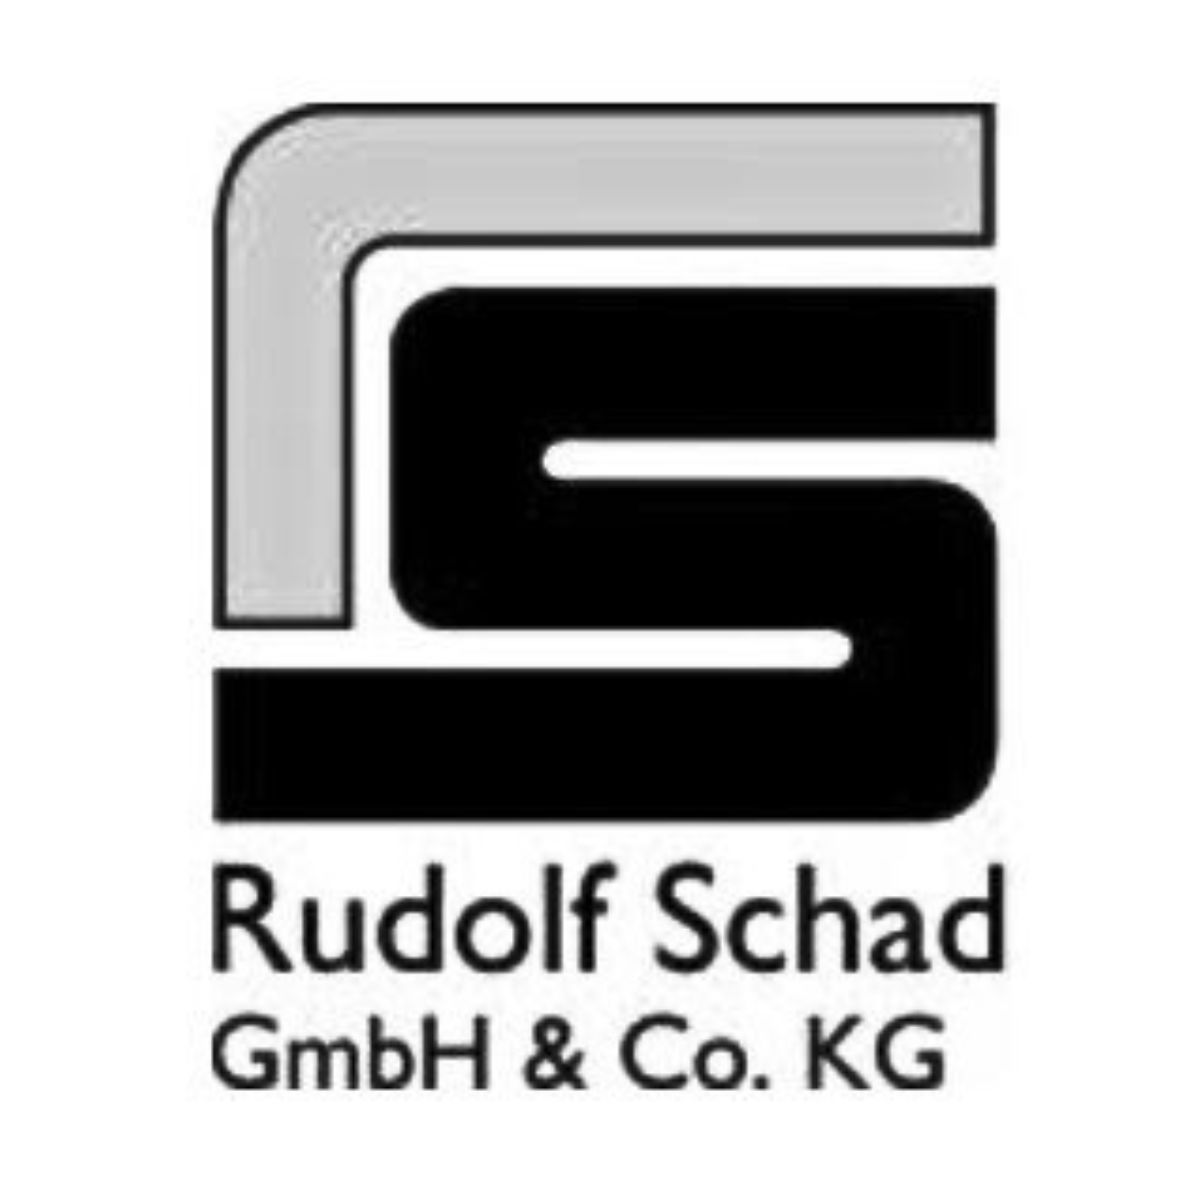 RUDOLF SCHAD